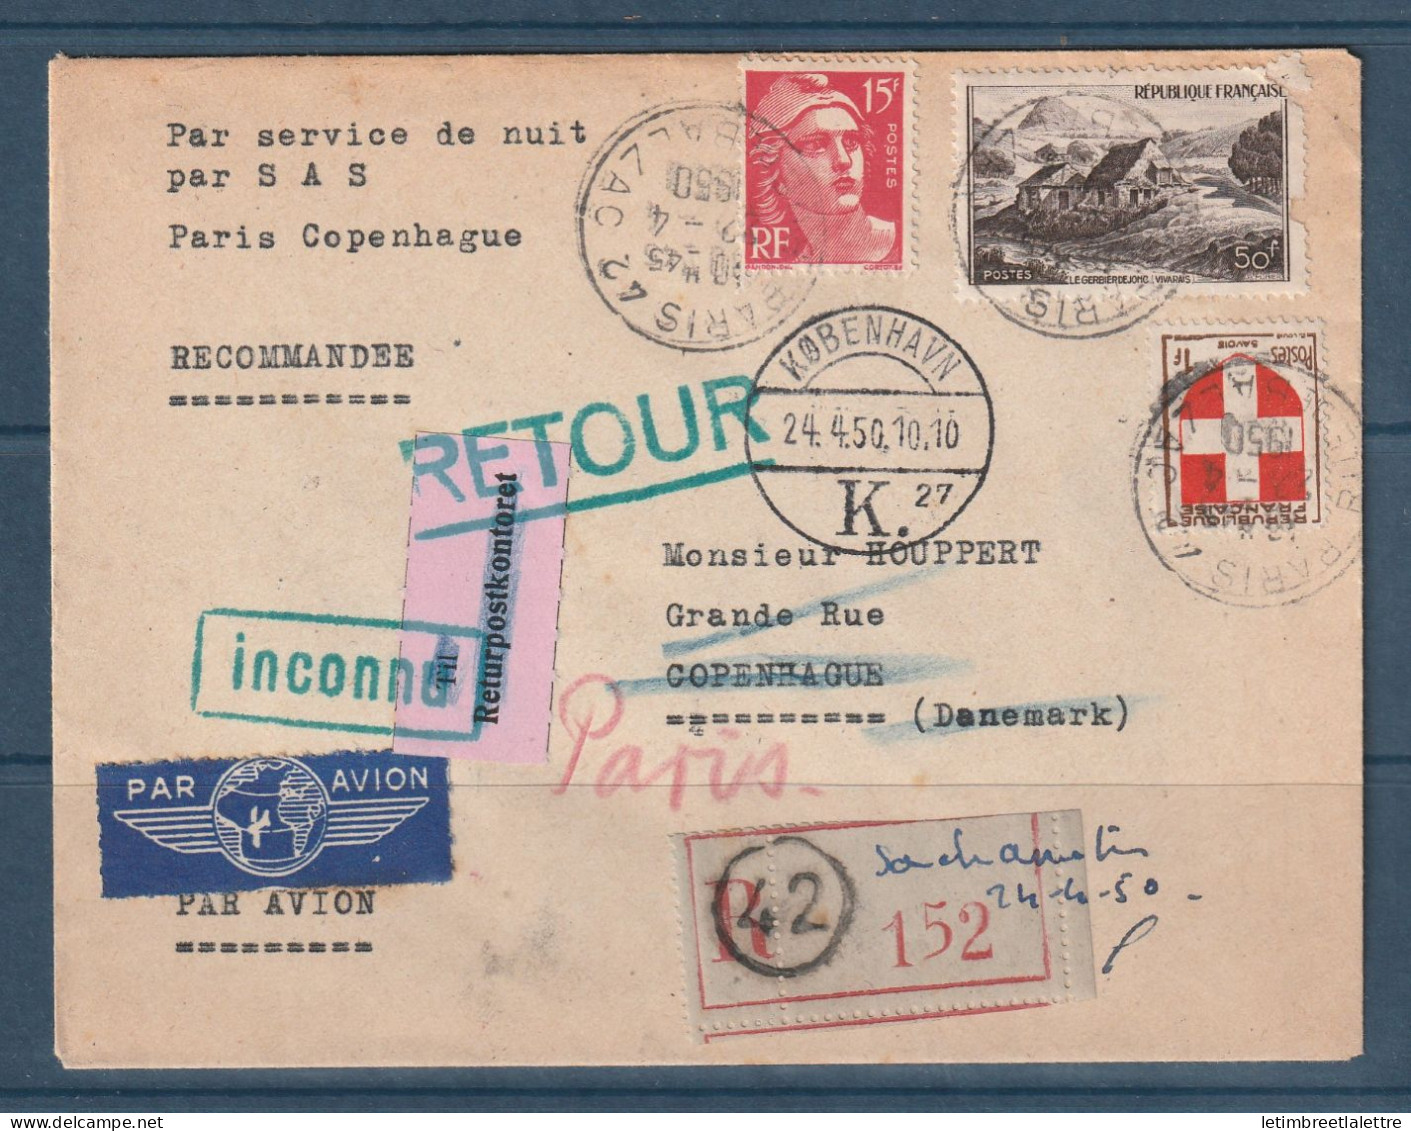 France - Service De Nuit Par SAS - Paris Copenhague - Retour à L'envoyeur En Recommandé - 1950 - Premiers Vols